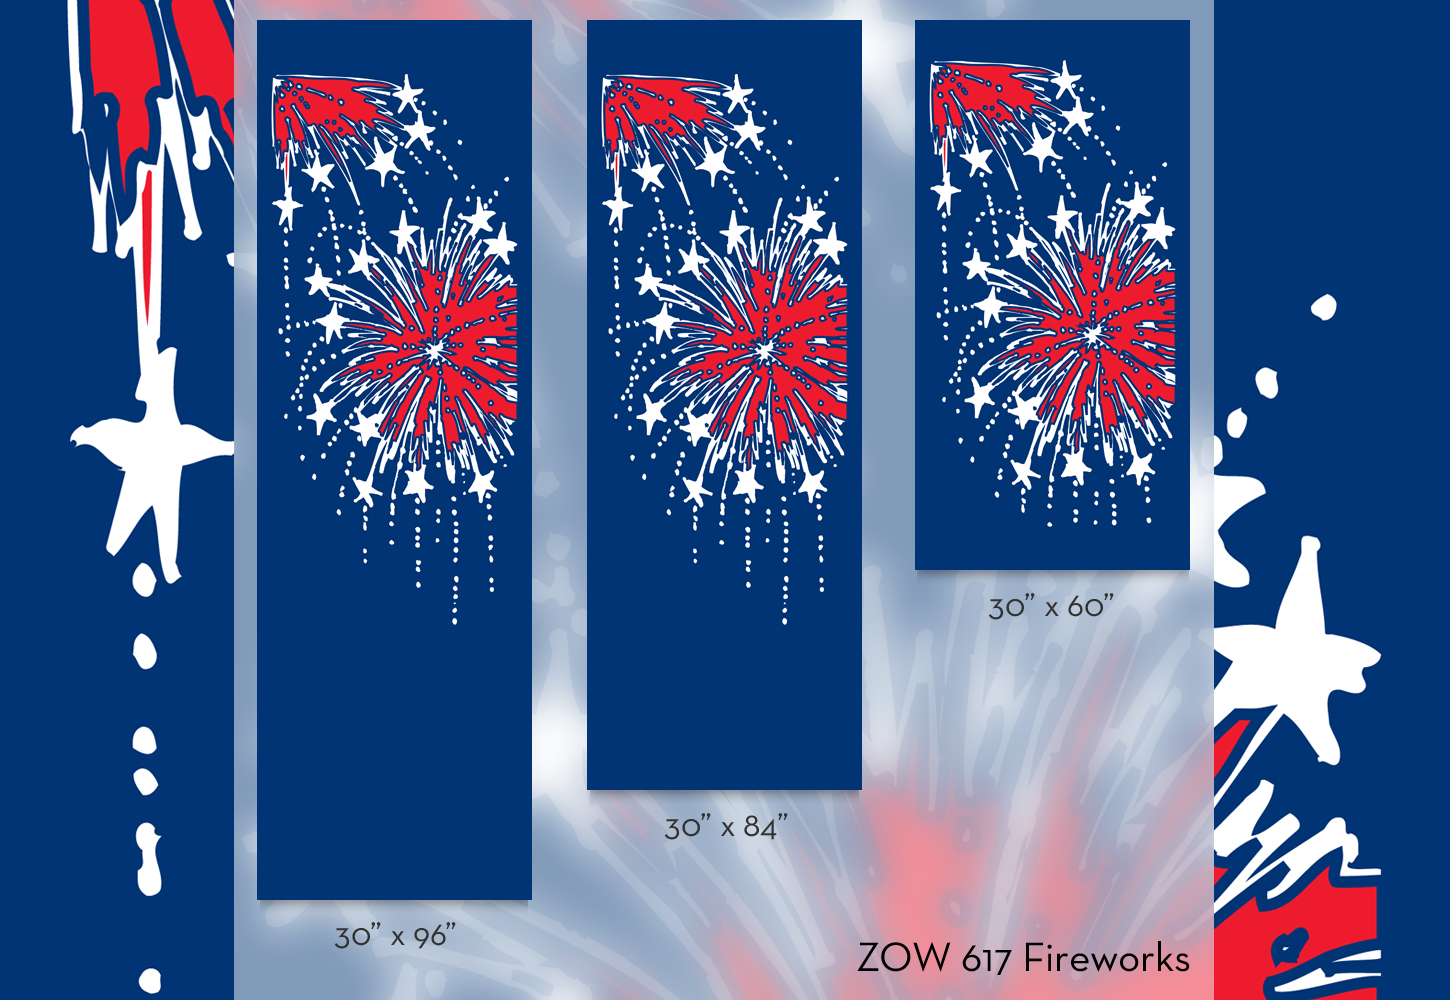 ZOW 617 Fireworks